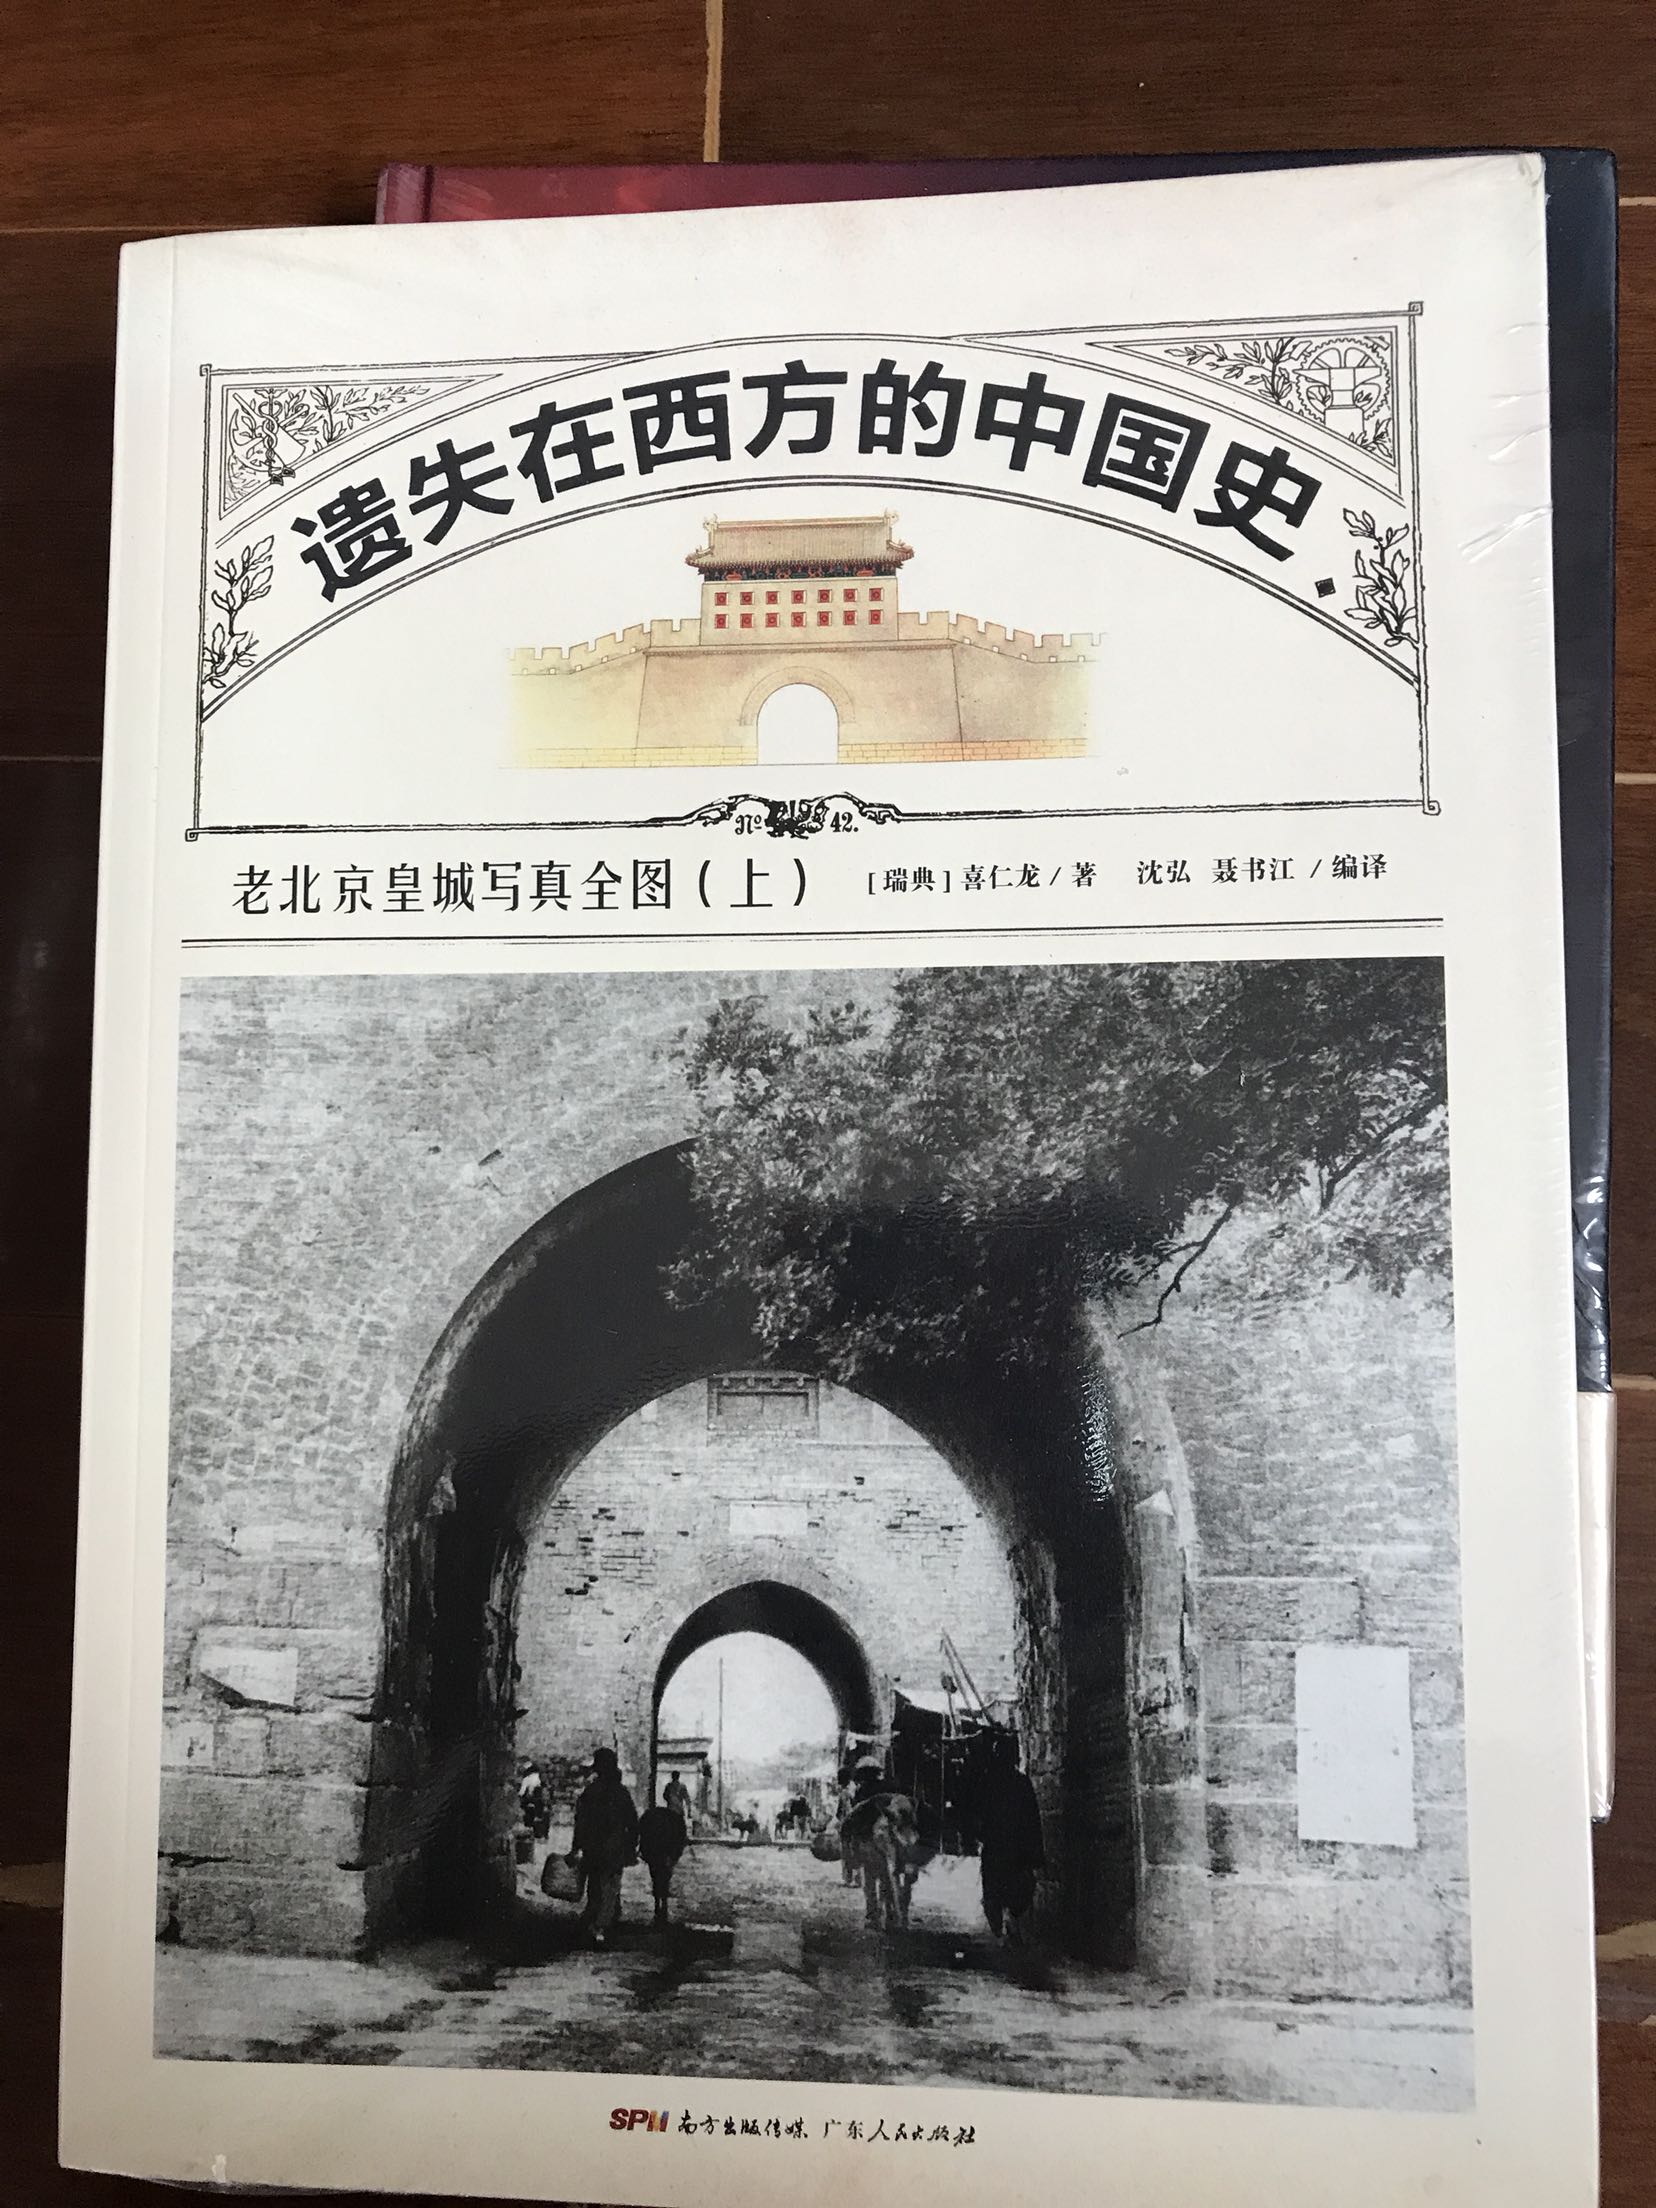 这本书对北京的故宫有很大的了解和帮助图片很历史很震撼人心很喜欢